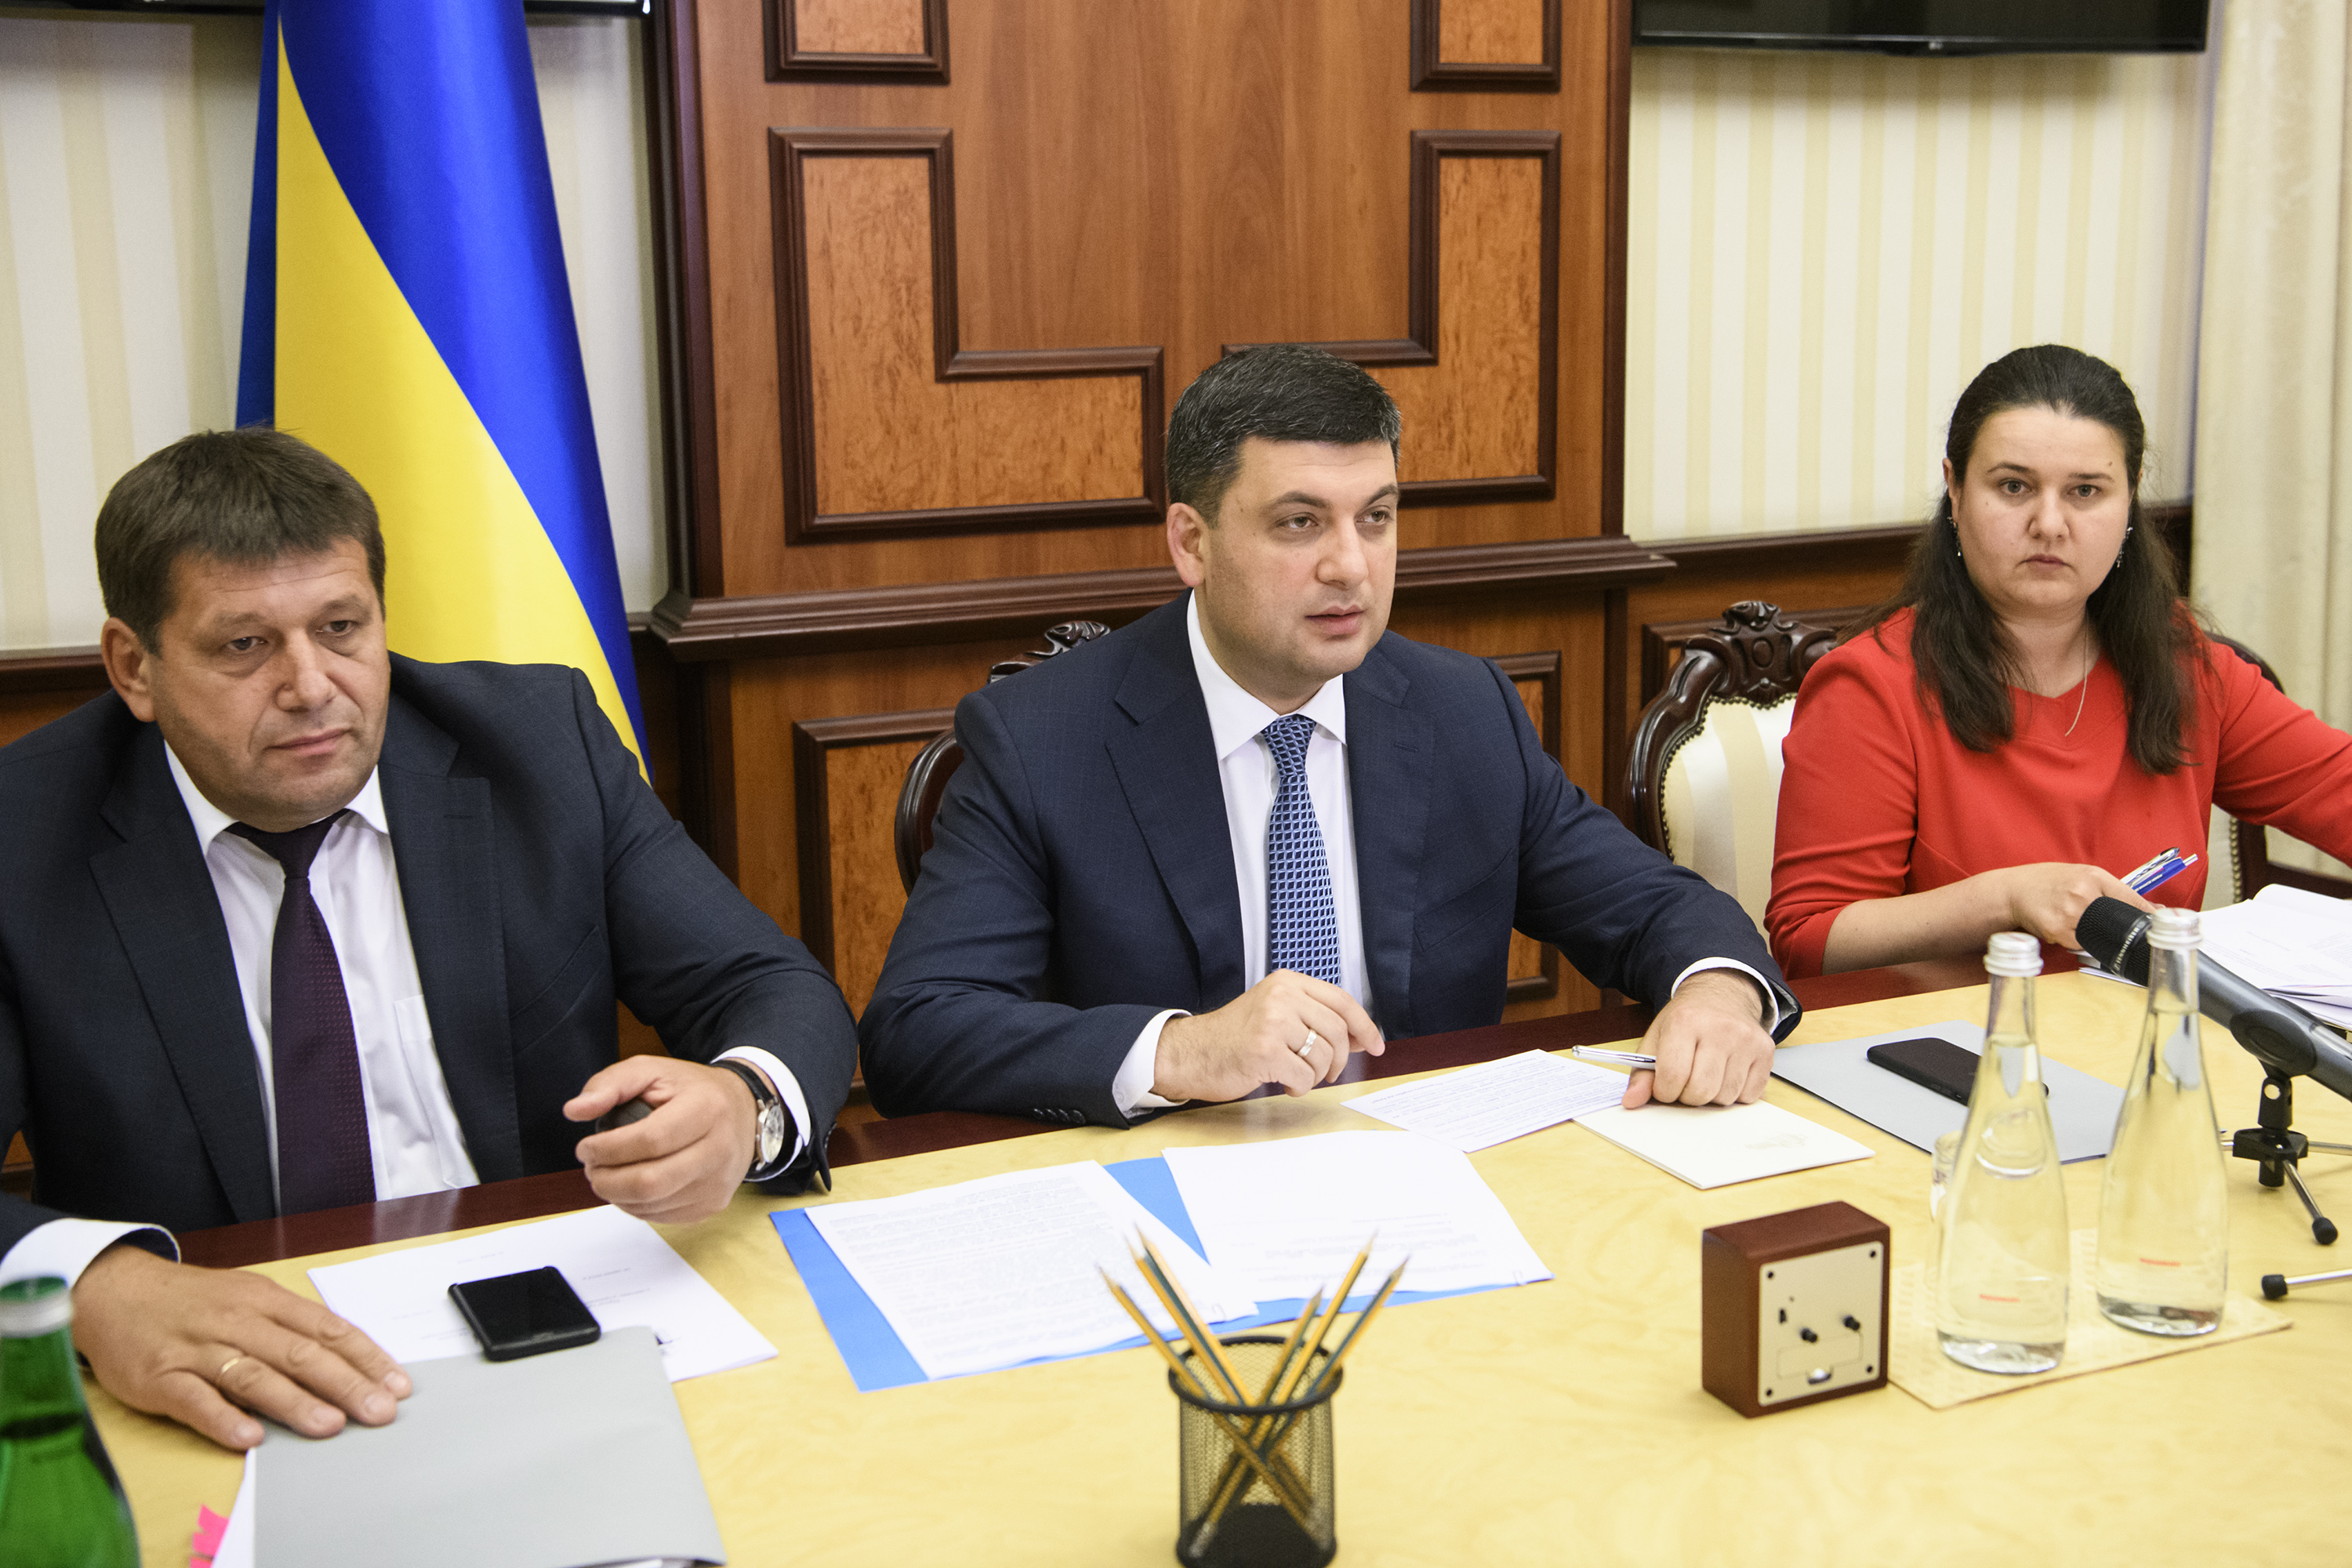 Премьер-министр Украины Владимир Гройсман заявил, что более 50% проектов дорожного строительства, запланированных на 2018 год, выполнены или находятся на завершающей стадии. 